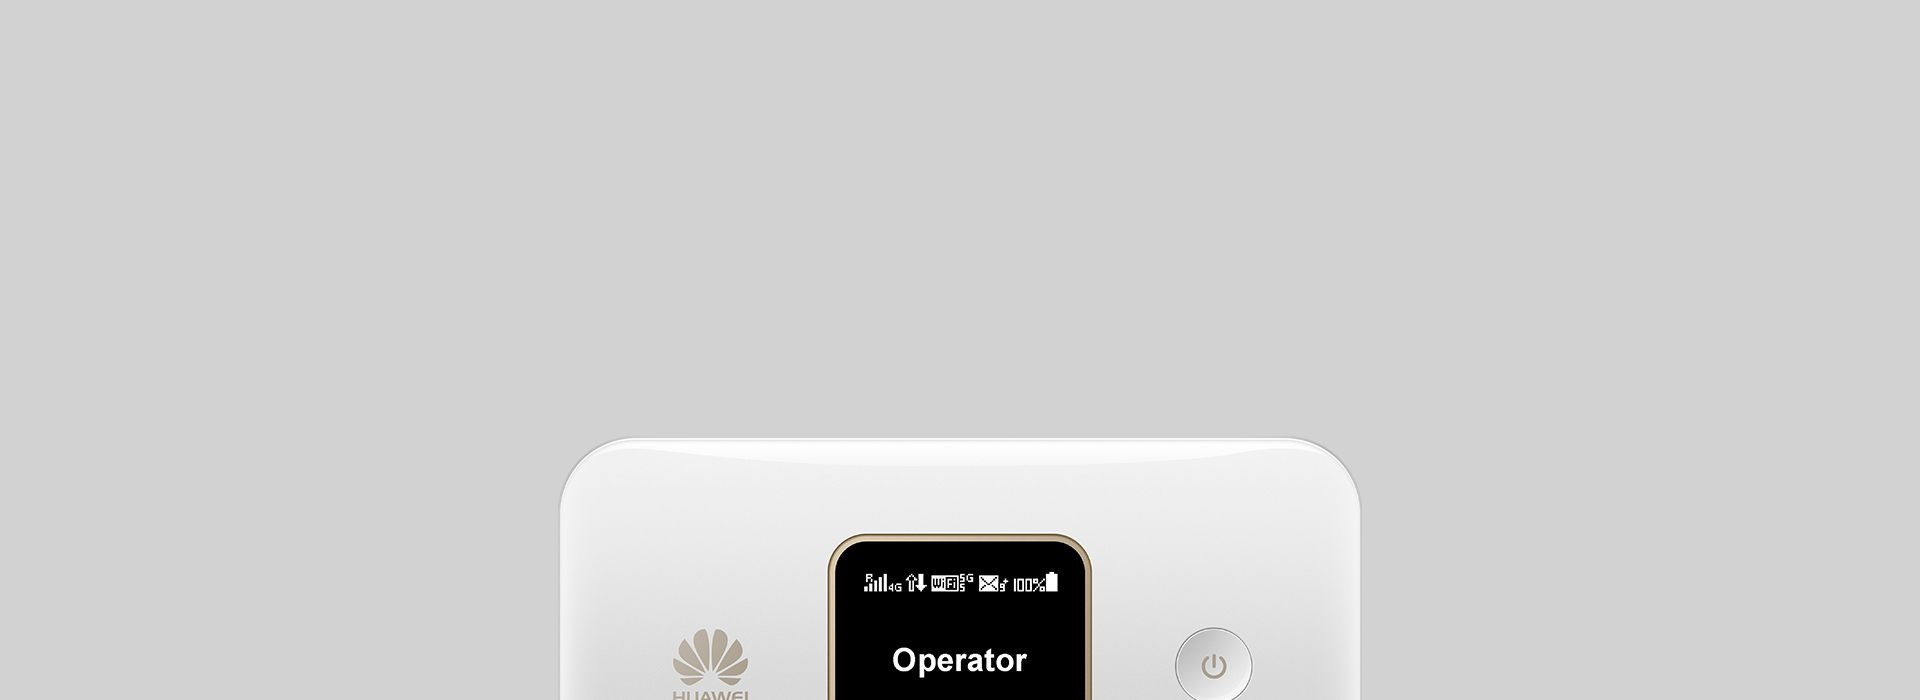 Роутер 3G/4G-WiFi Huawei e5785